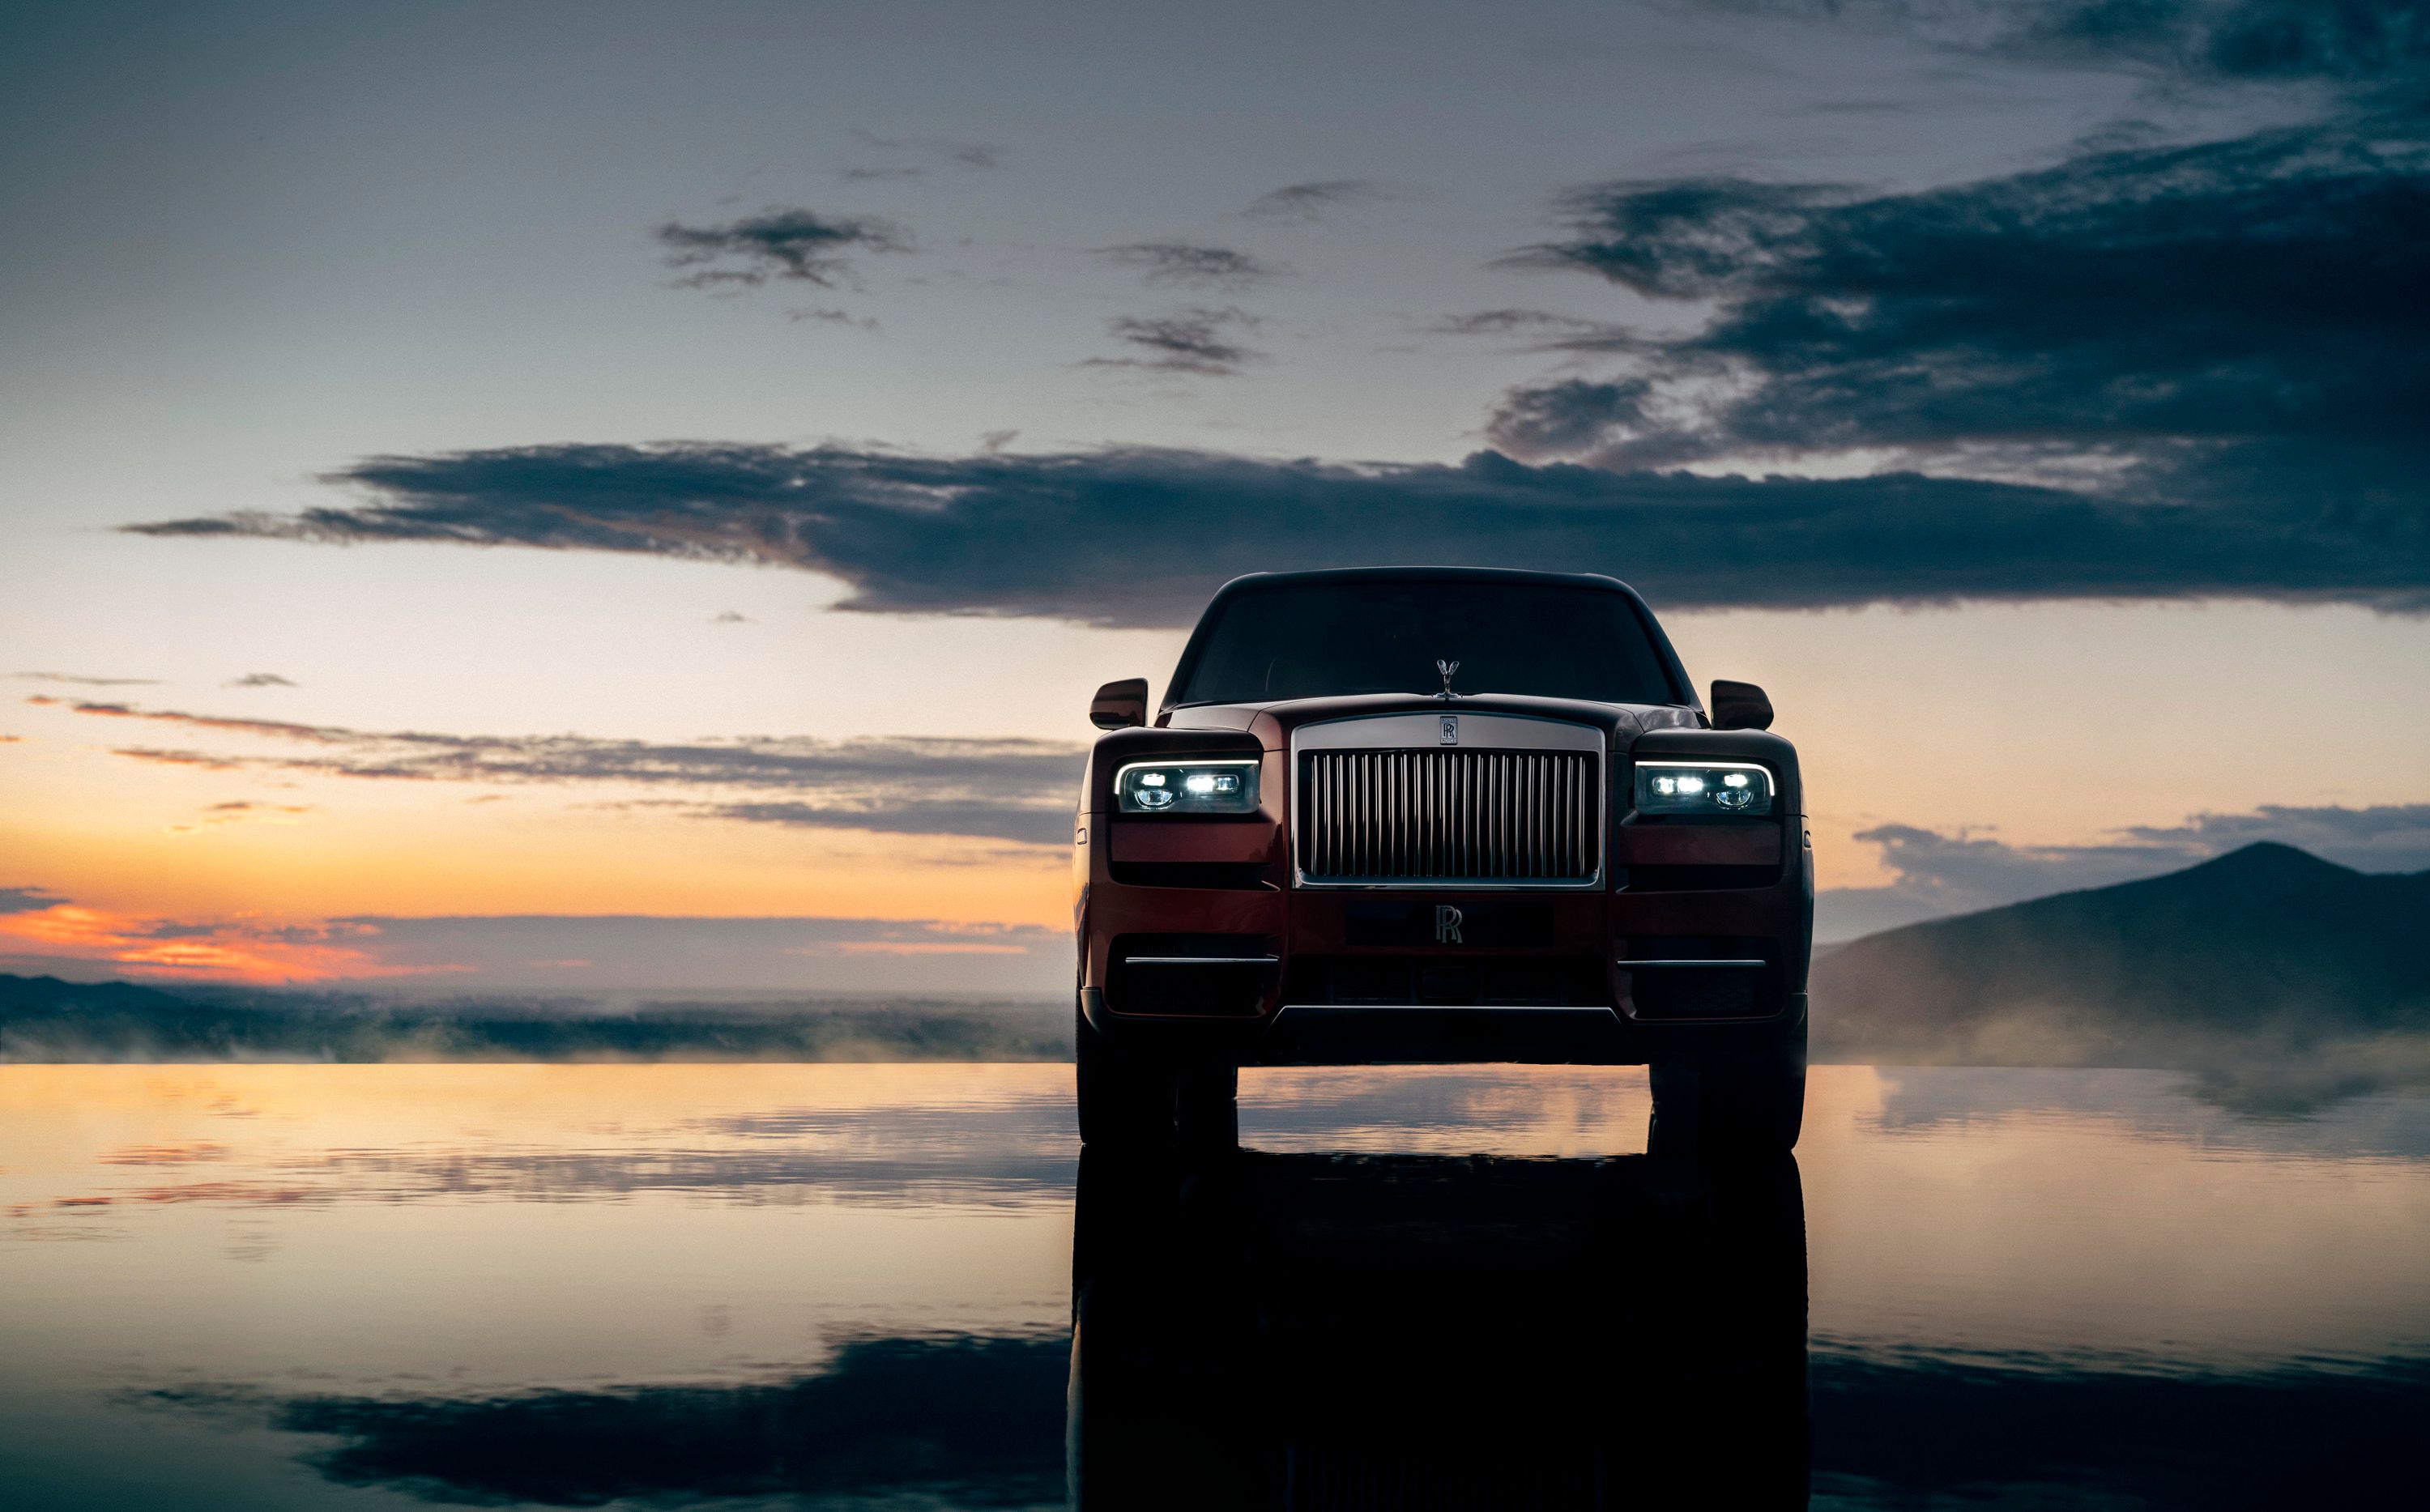 2019 Rolls-Royce Cullinan